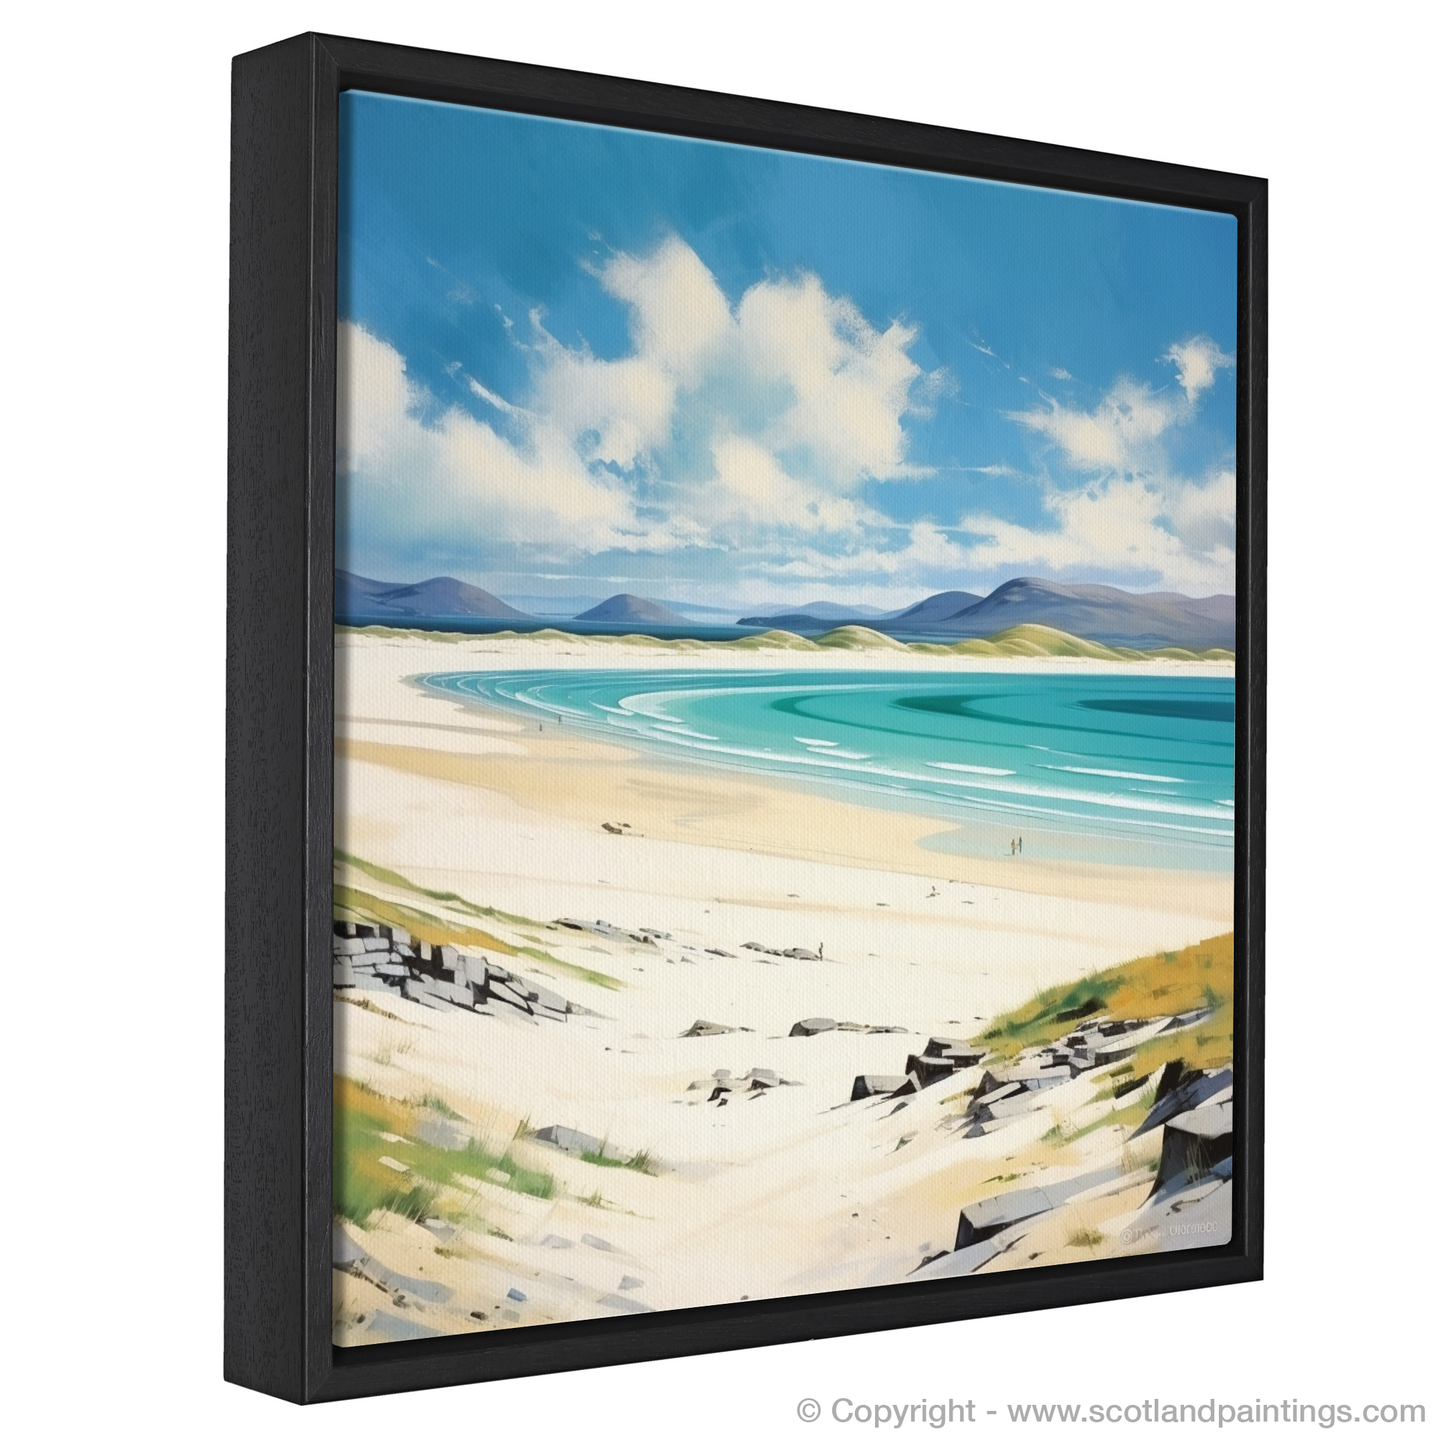 Painting and Art Print of Luskentyre Beach, Isle of Harris entitled "Serene Shores of Luskentyre Beach".